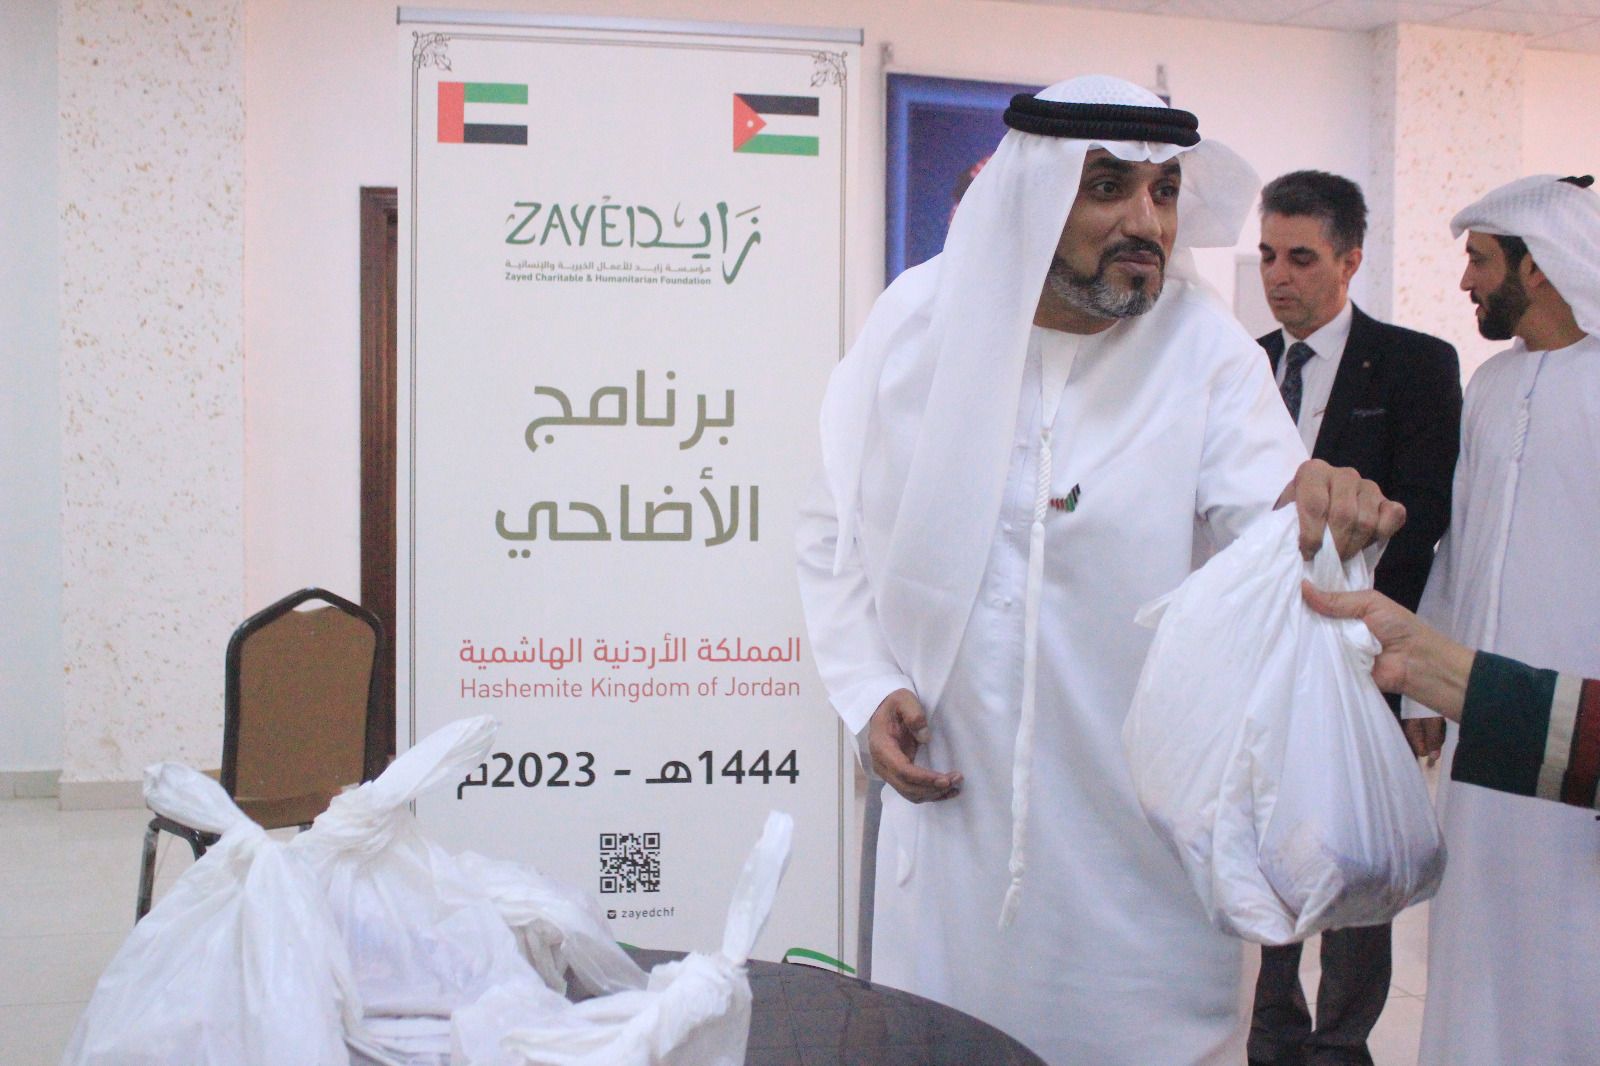 سفارة دولة الامارات في عمّان تنفذ مشروع الأضاحي المقدم من مؤسسة زايد للأعمال الخيرية والإنسانية